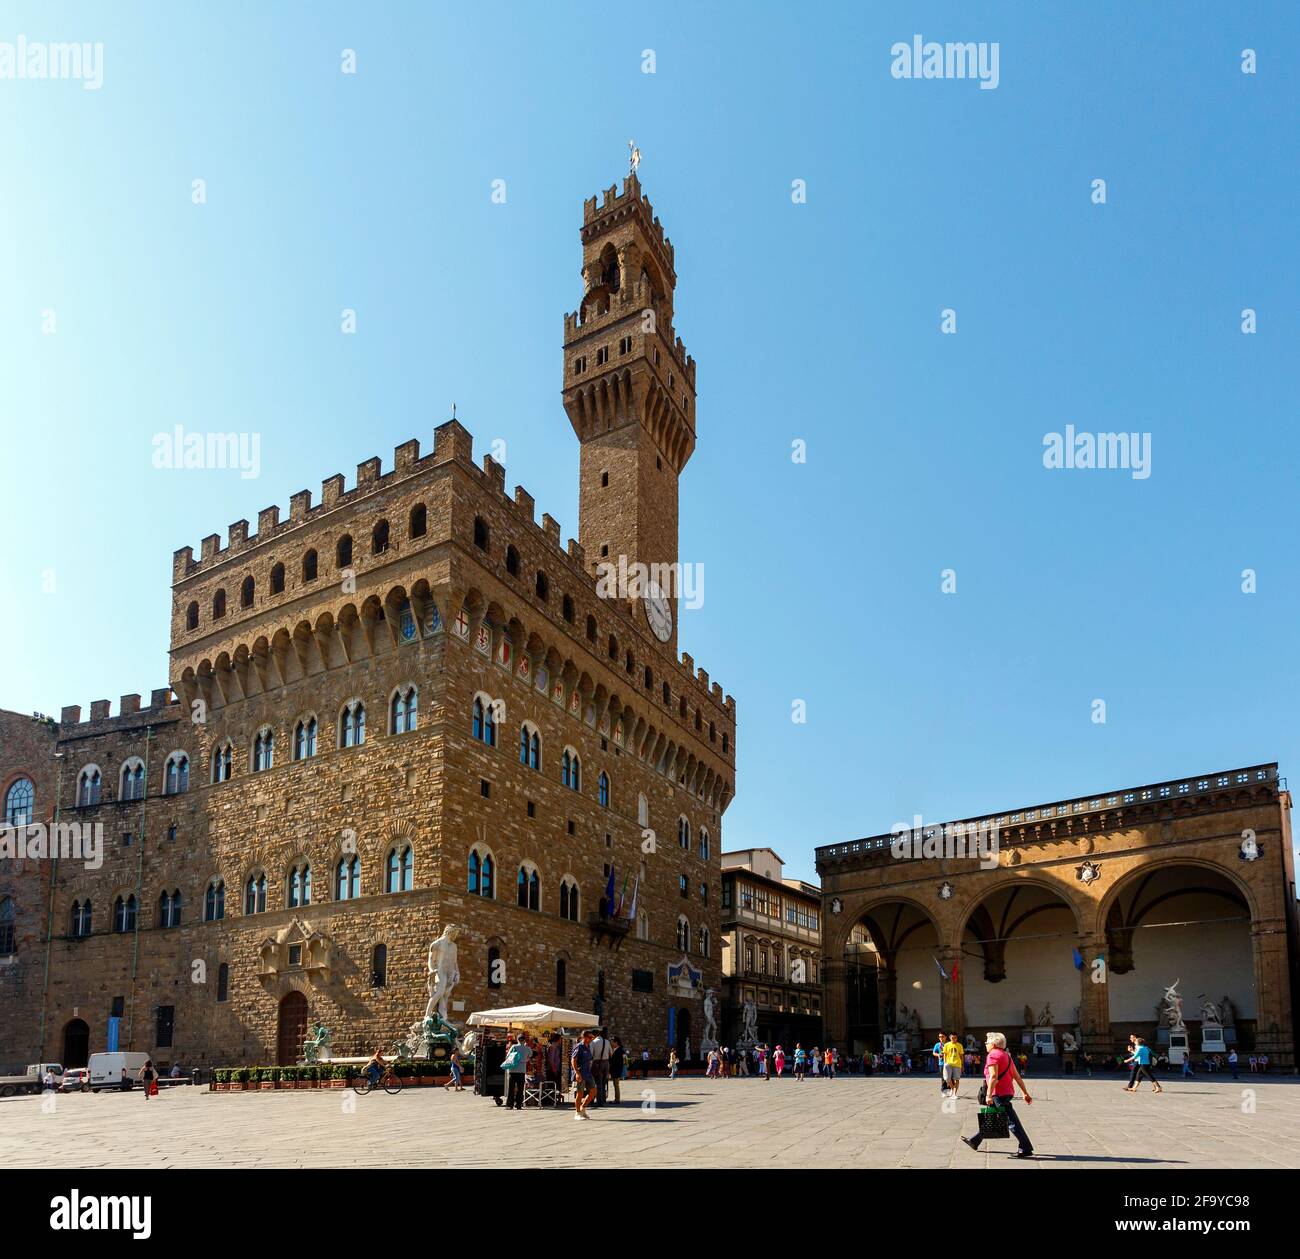 Firenze, Provincia di Firenze, Toscana, Italia. Palazzo Vecchio in Piazza della Signoria. Il centro storico di Firenze è un patrimonio mondiale UNESCO Foto Stock